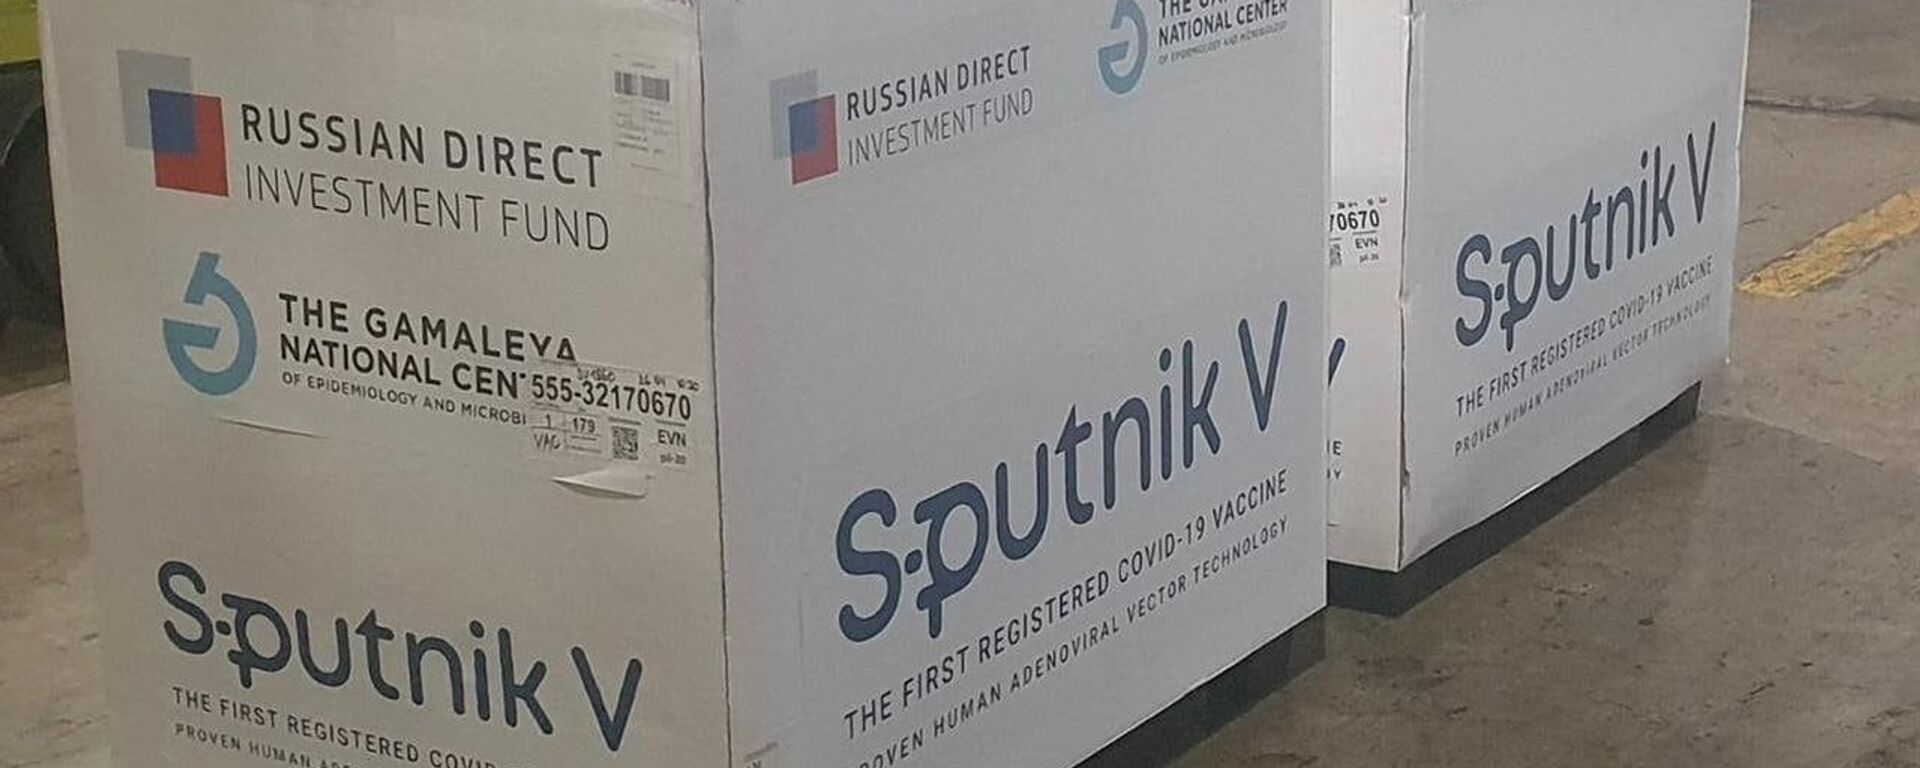 Սպուտնիկ V պատվաստանյութի հերթական խմբաքանակը հասել է Հայաստան - Sputnik Արմենիա, 1920, 02.10.2021